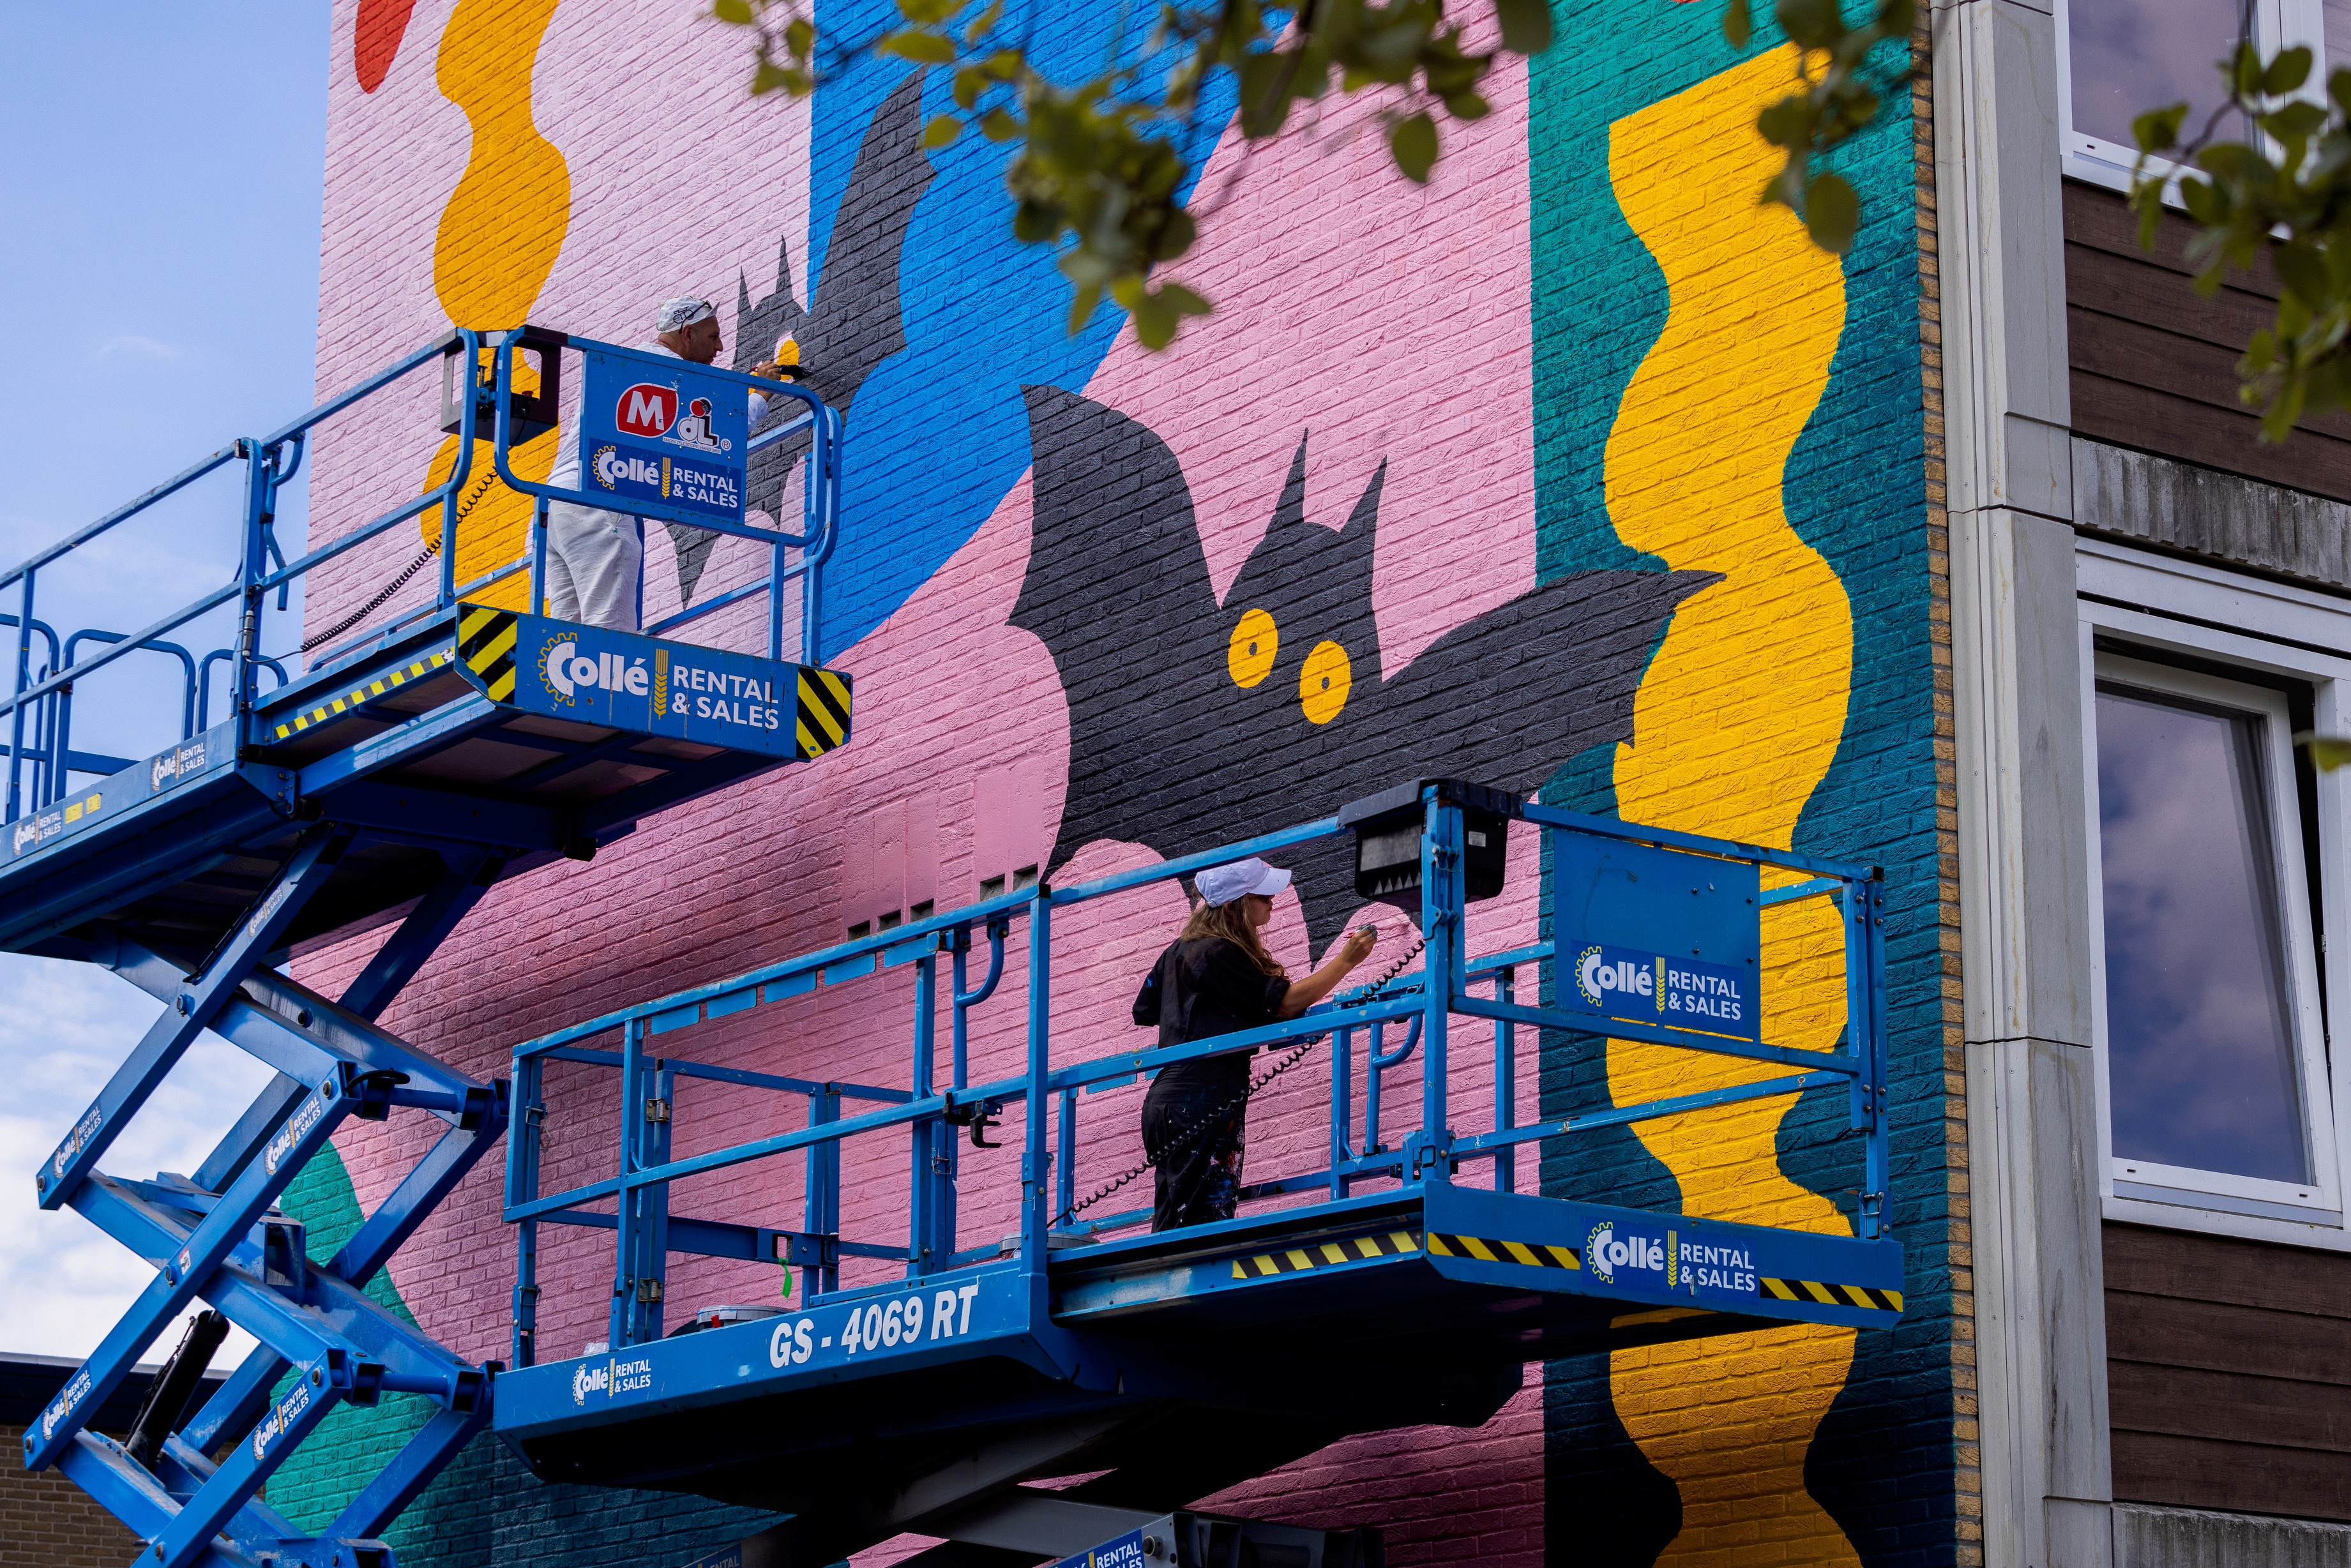 Twee hoogwerkers staan tegen de hoge muur van een flatgebouw af met daarop twee mensen (rechts vooraan de kunstenaar) die werken aan een grote muurschildering met kleurige vormen en een vleermuis 